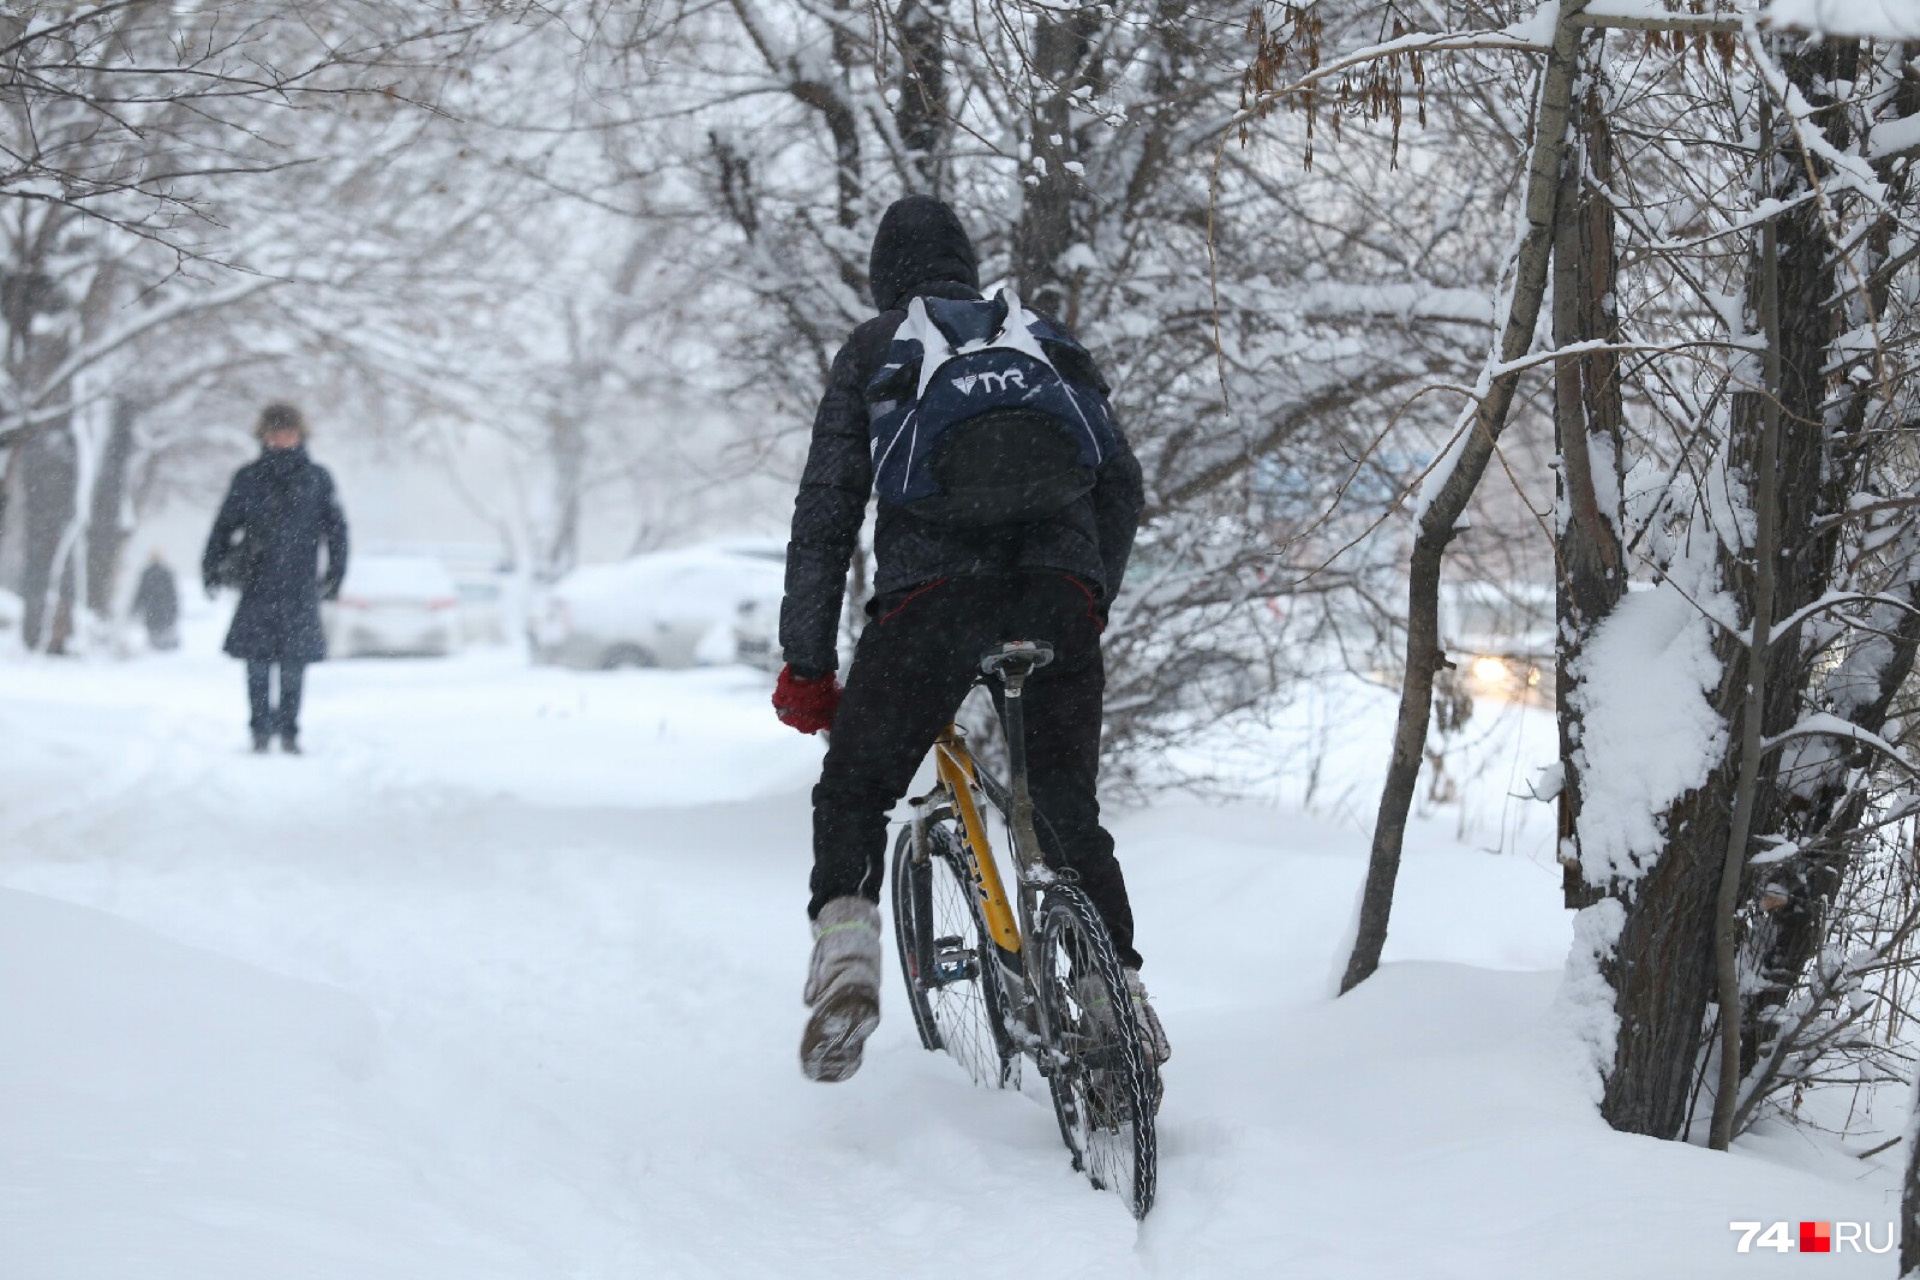 Если тротуары будут хорошо чистить от снега, велосипеды начнут использовать и зимой, уверен эксперт